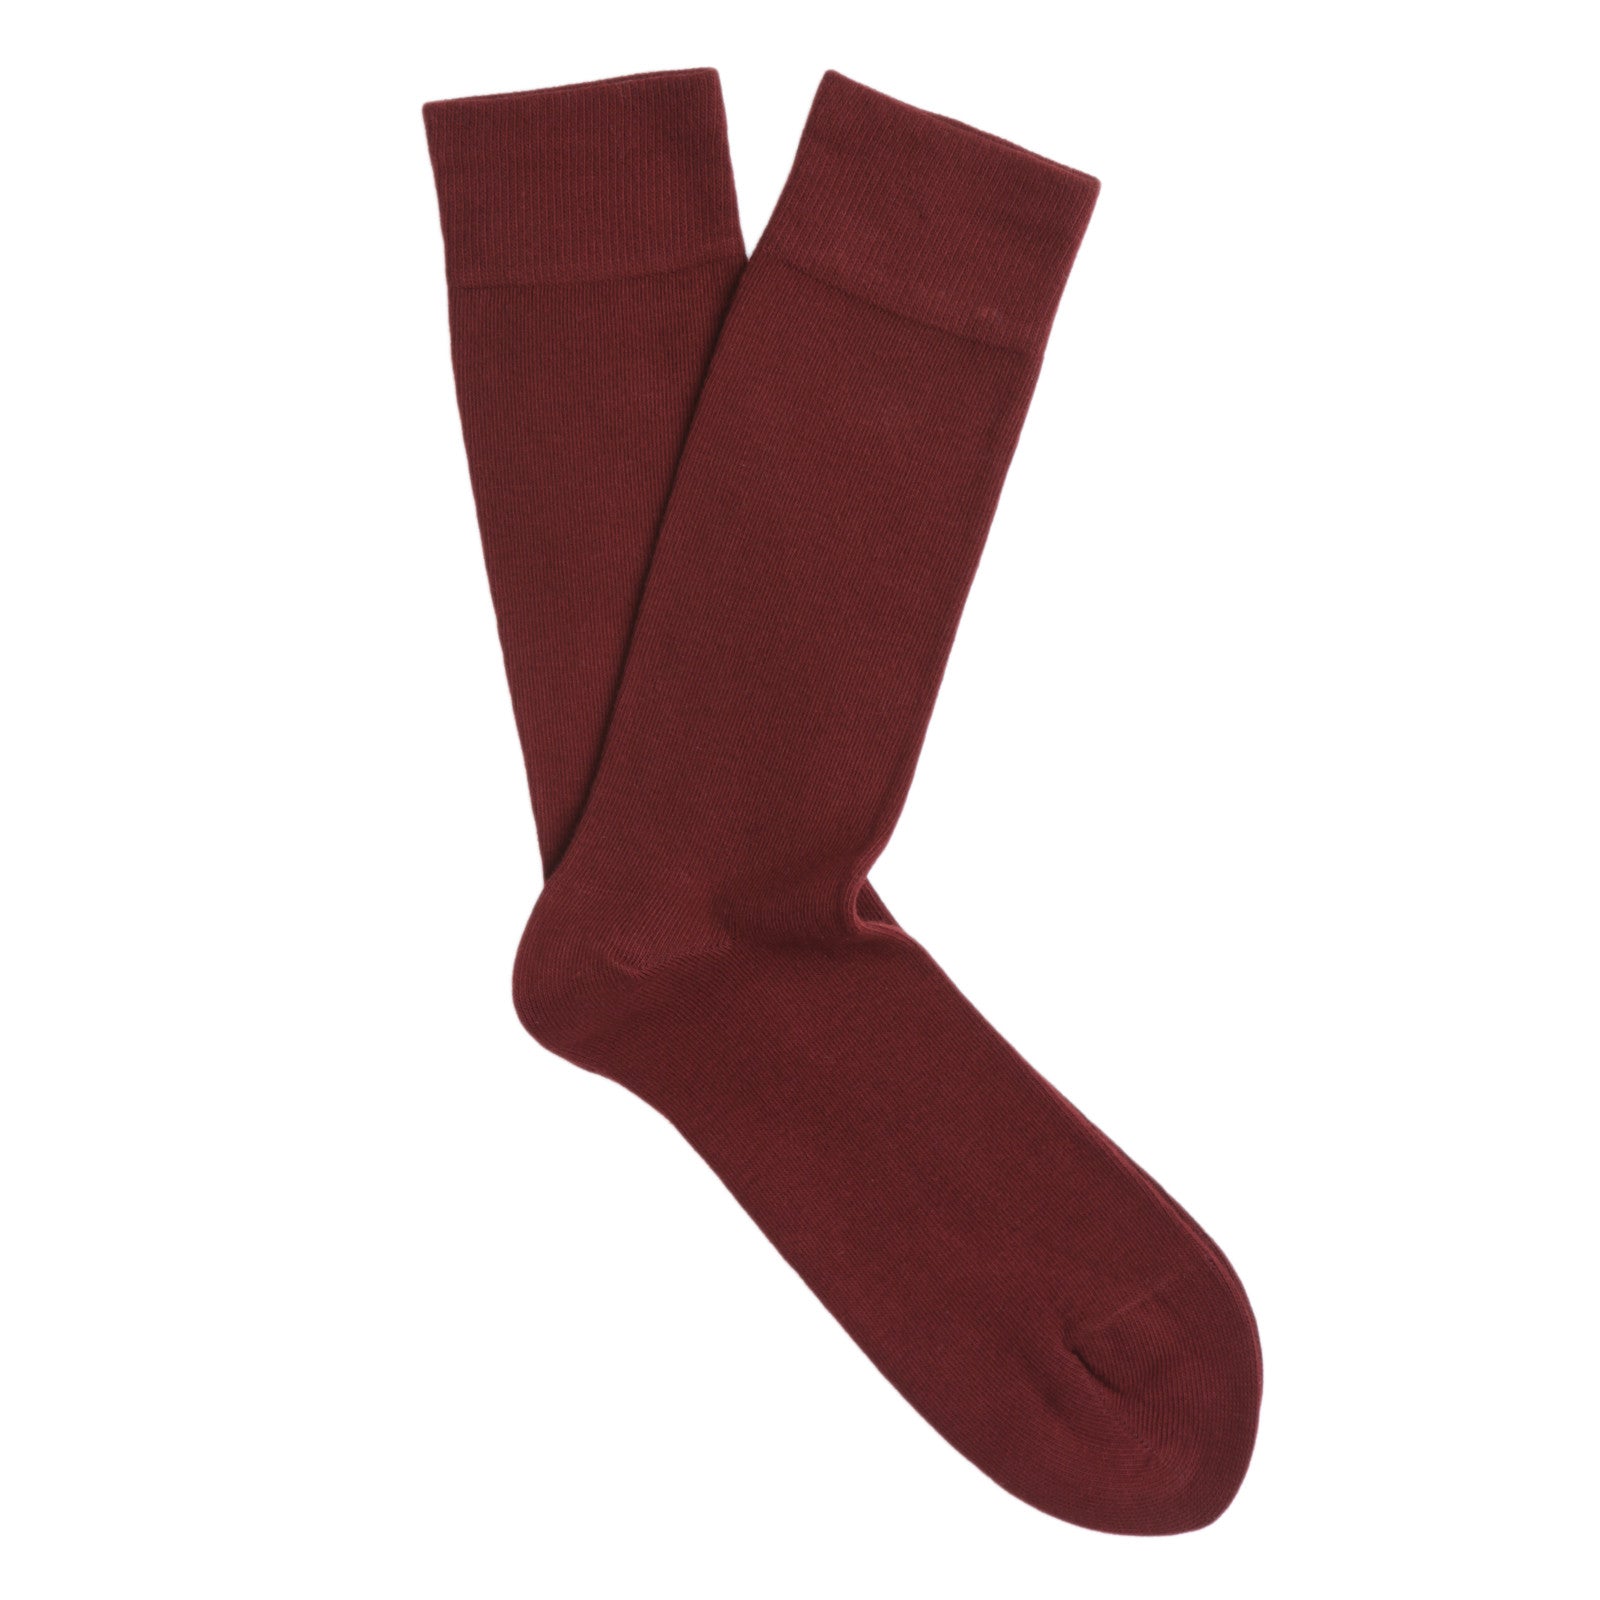 Burgundy/Maroon Socks for Men | Men's Furnishings